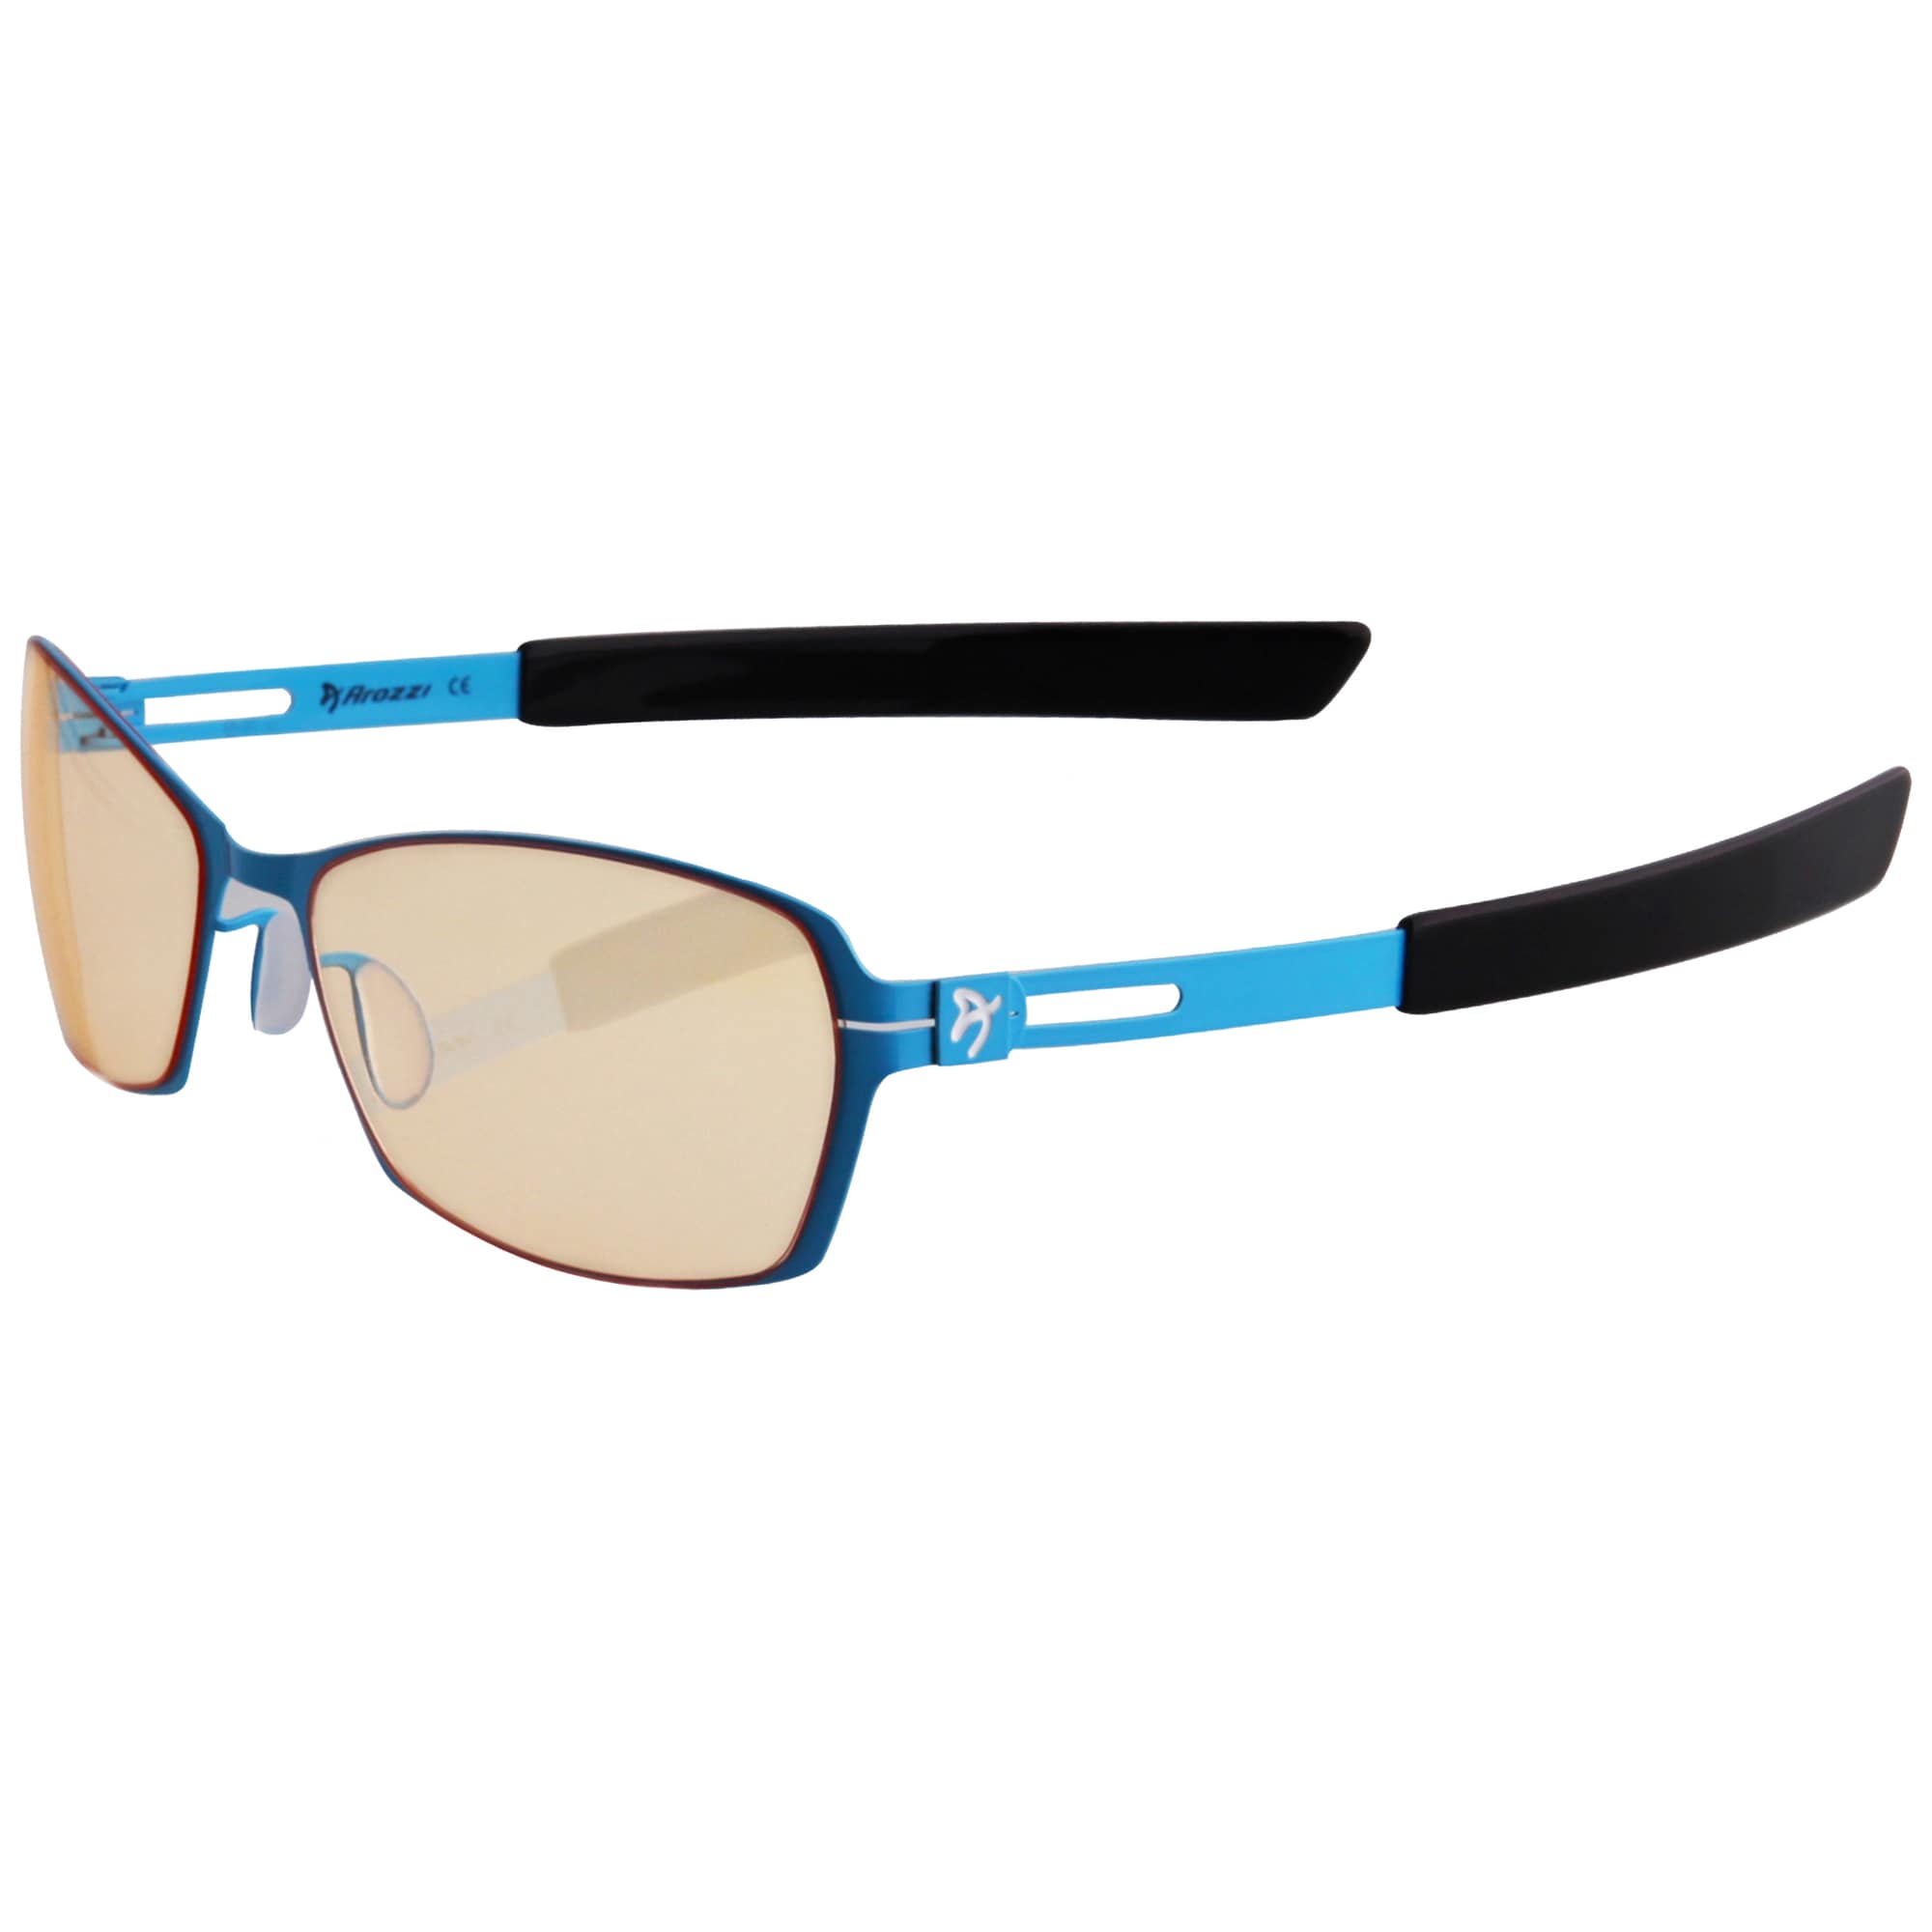 Arozzi Visione VX500 gamingbriller (blå/sort) - Elkjøp